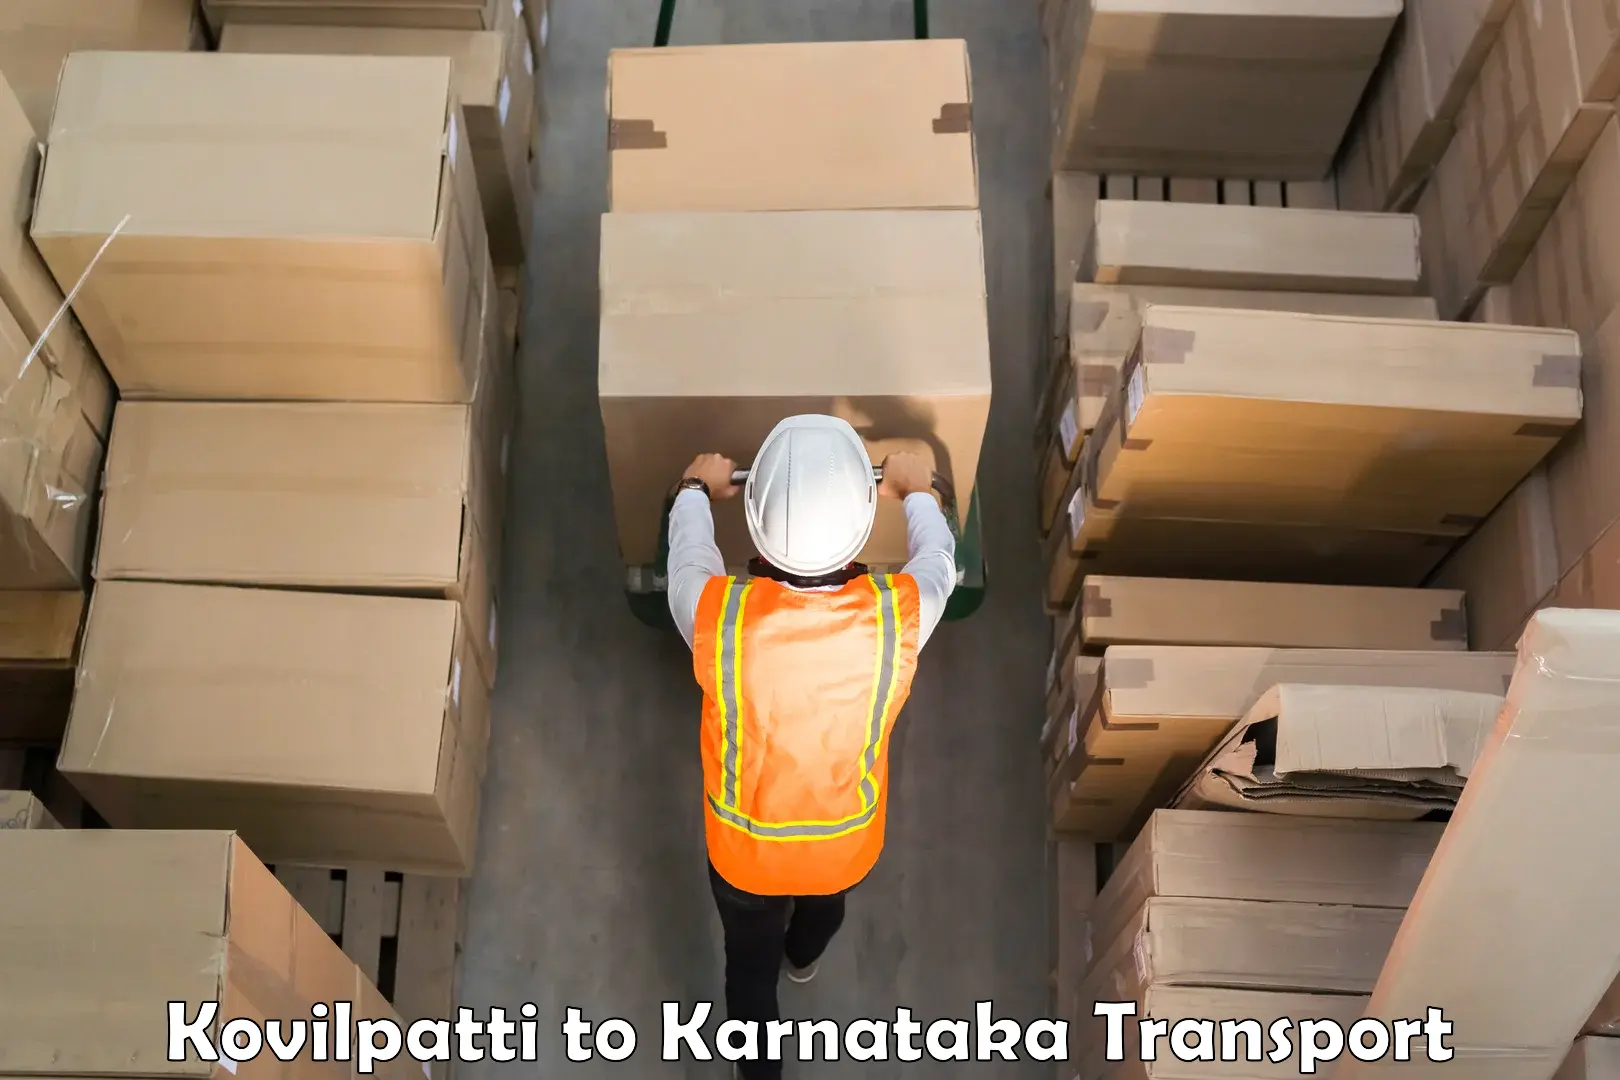 Parcel transport services Kovilpatti to Karnataka